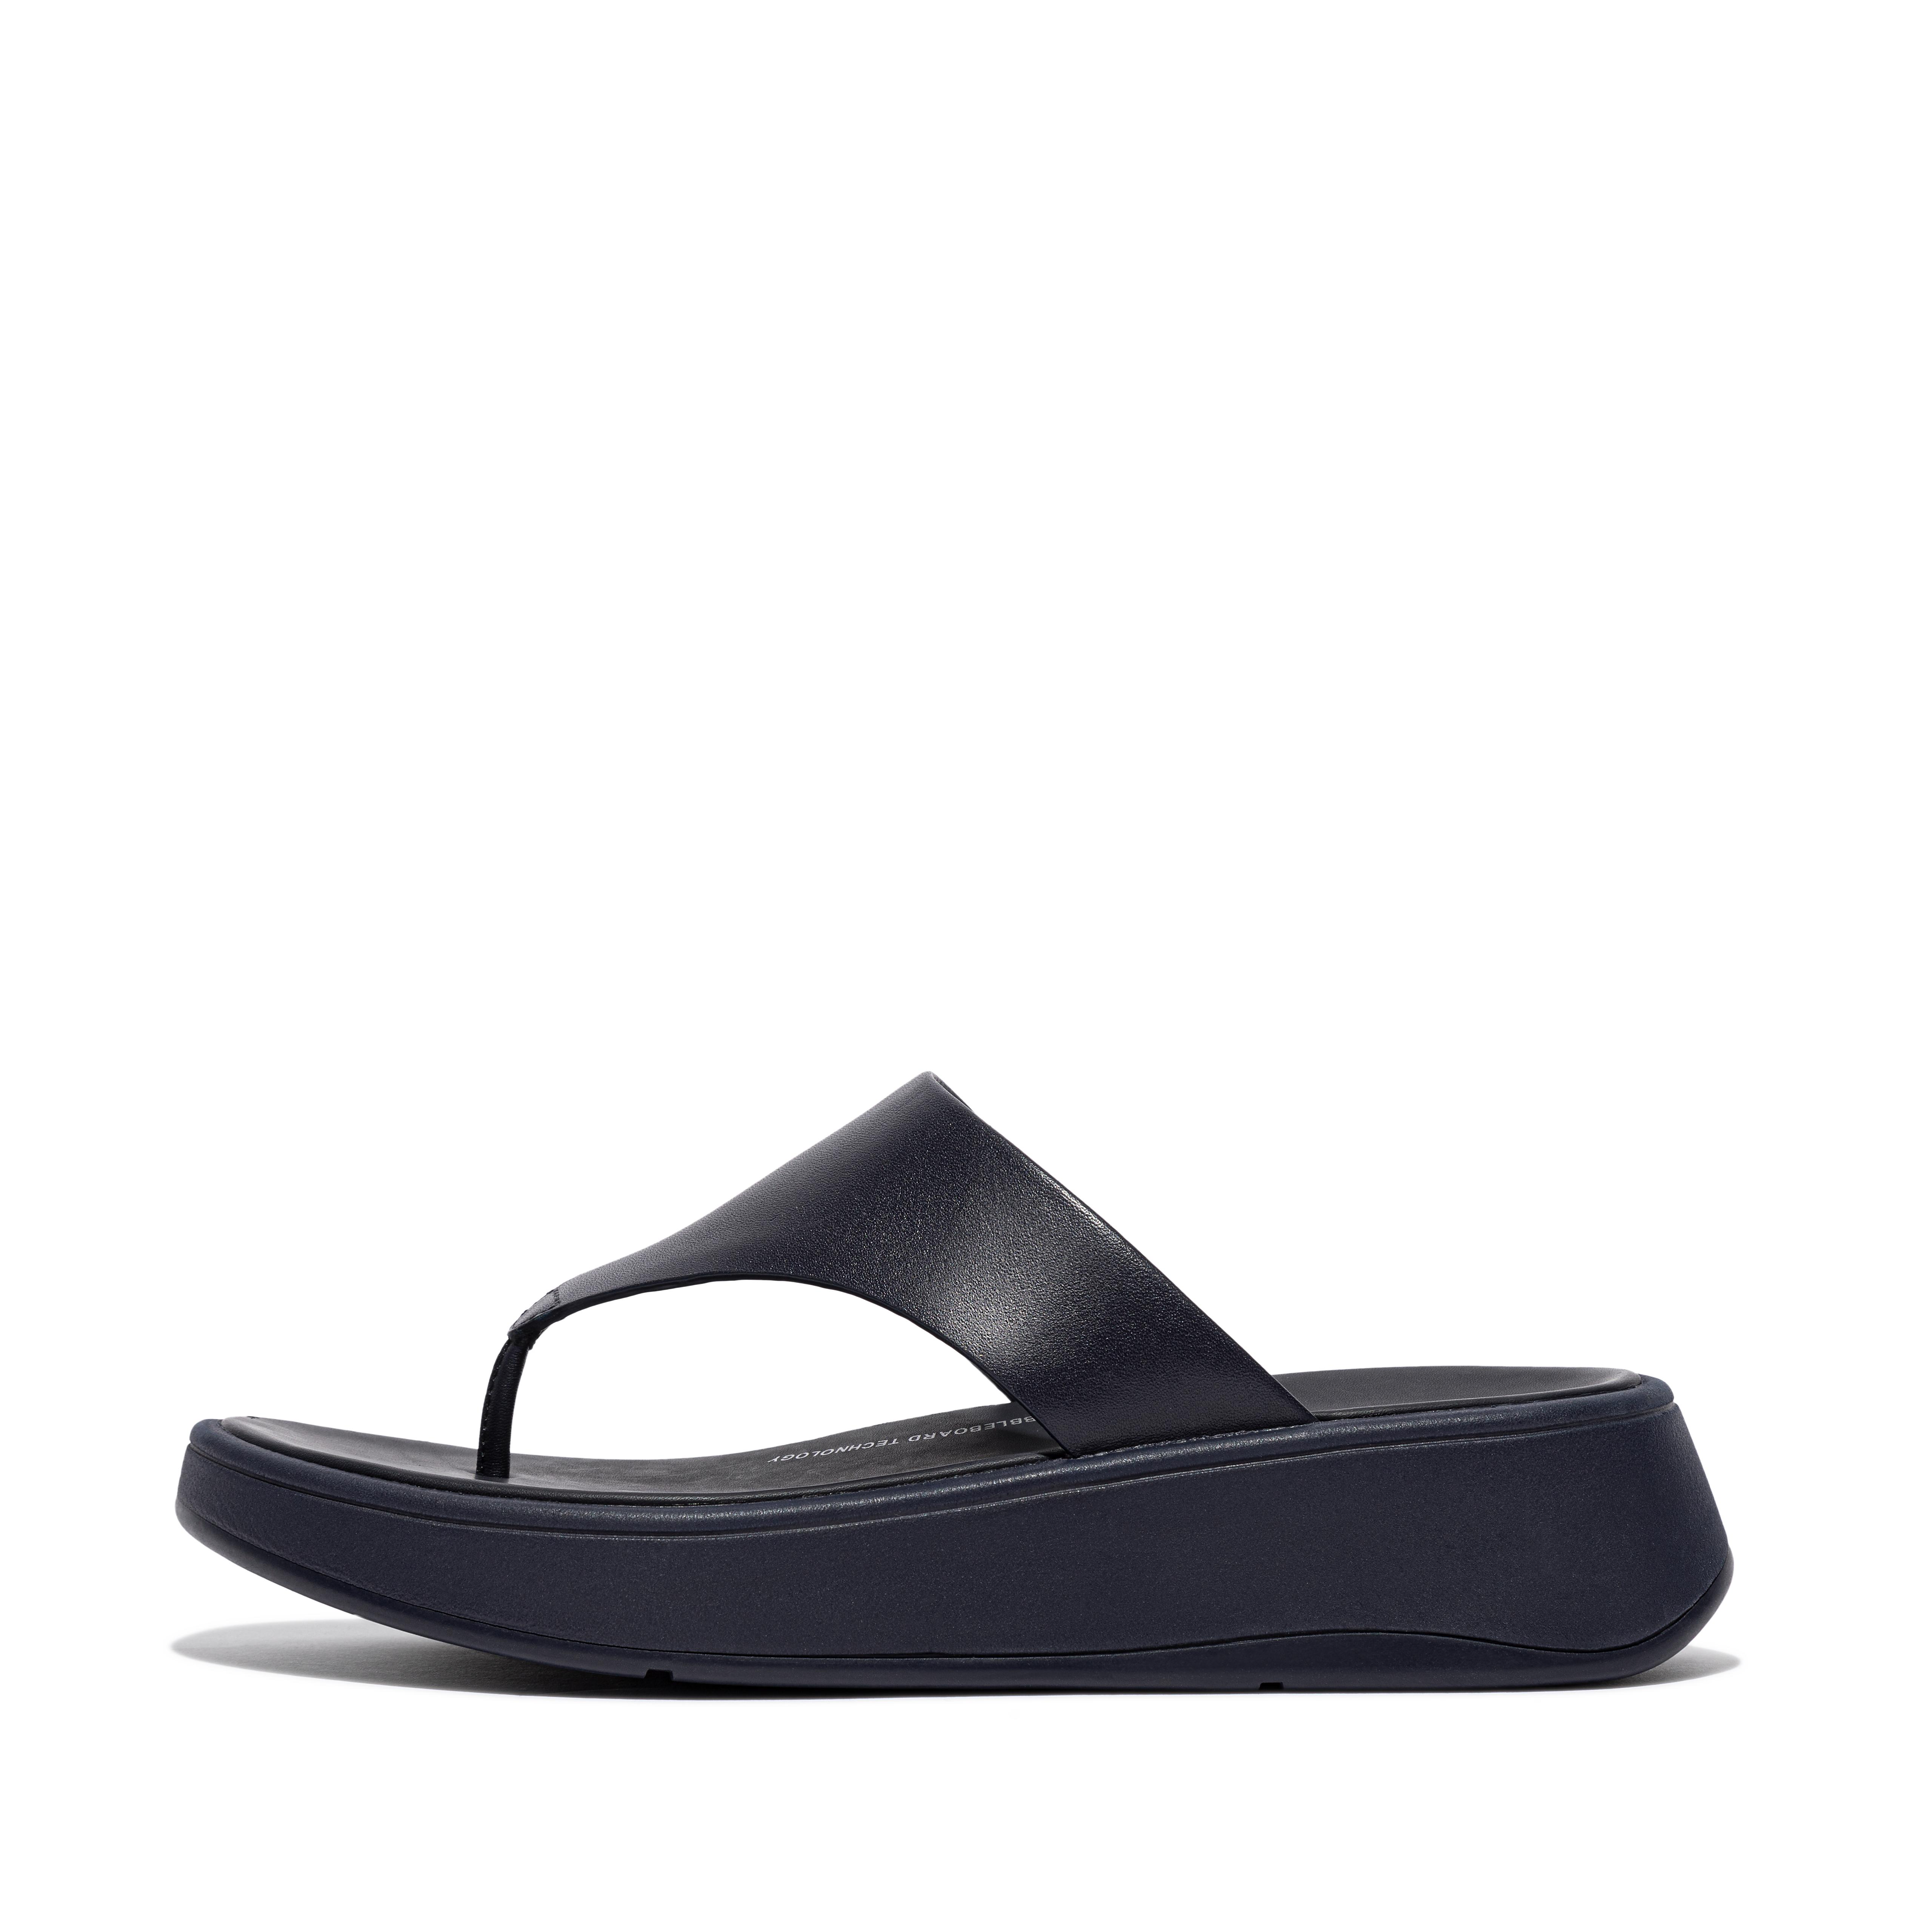 핏플랍 샌들 Fitflop Leather Flatform Toe-Post Sandals,Midnight Navy